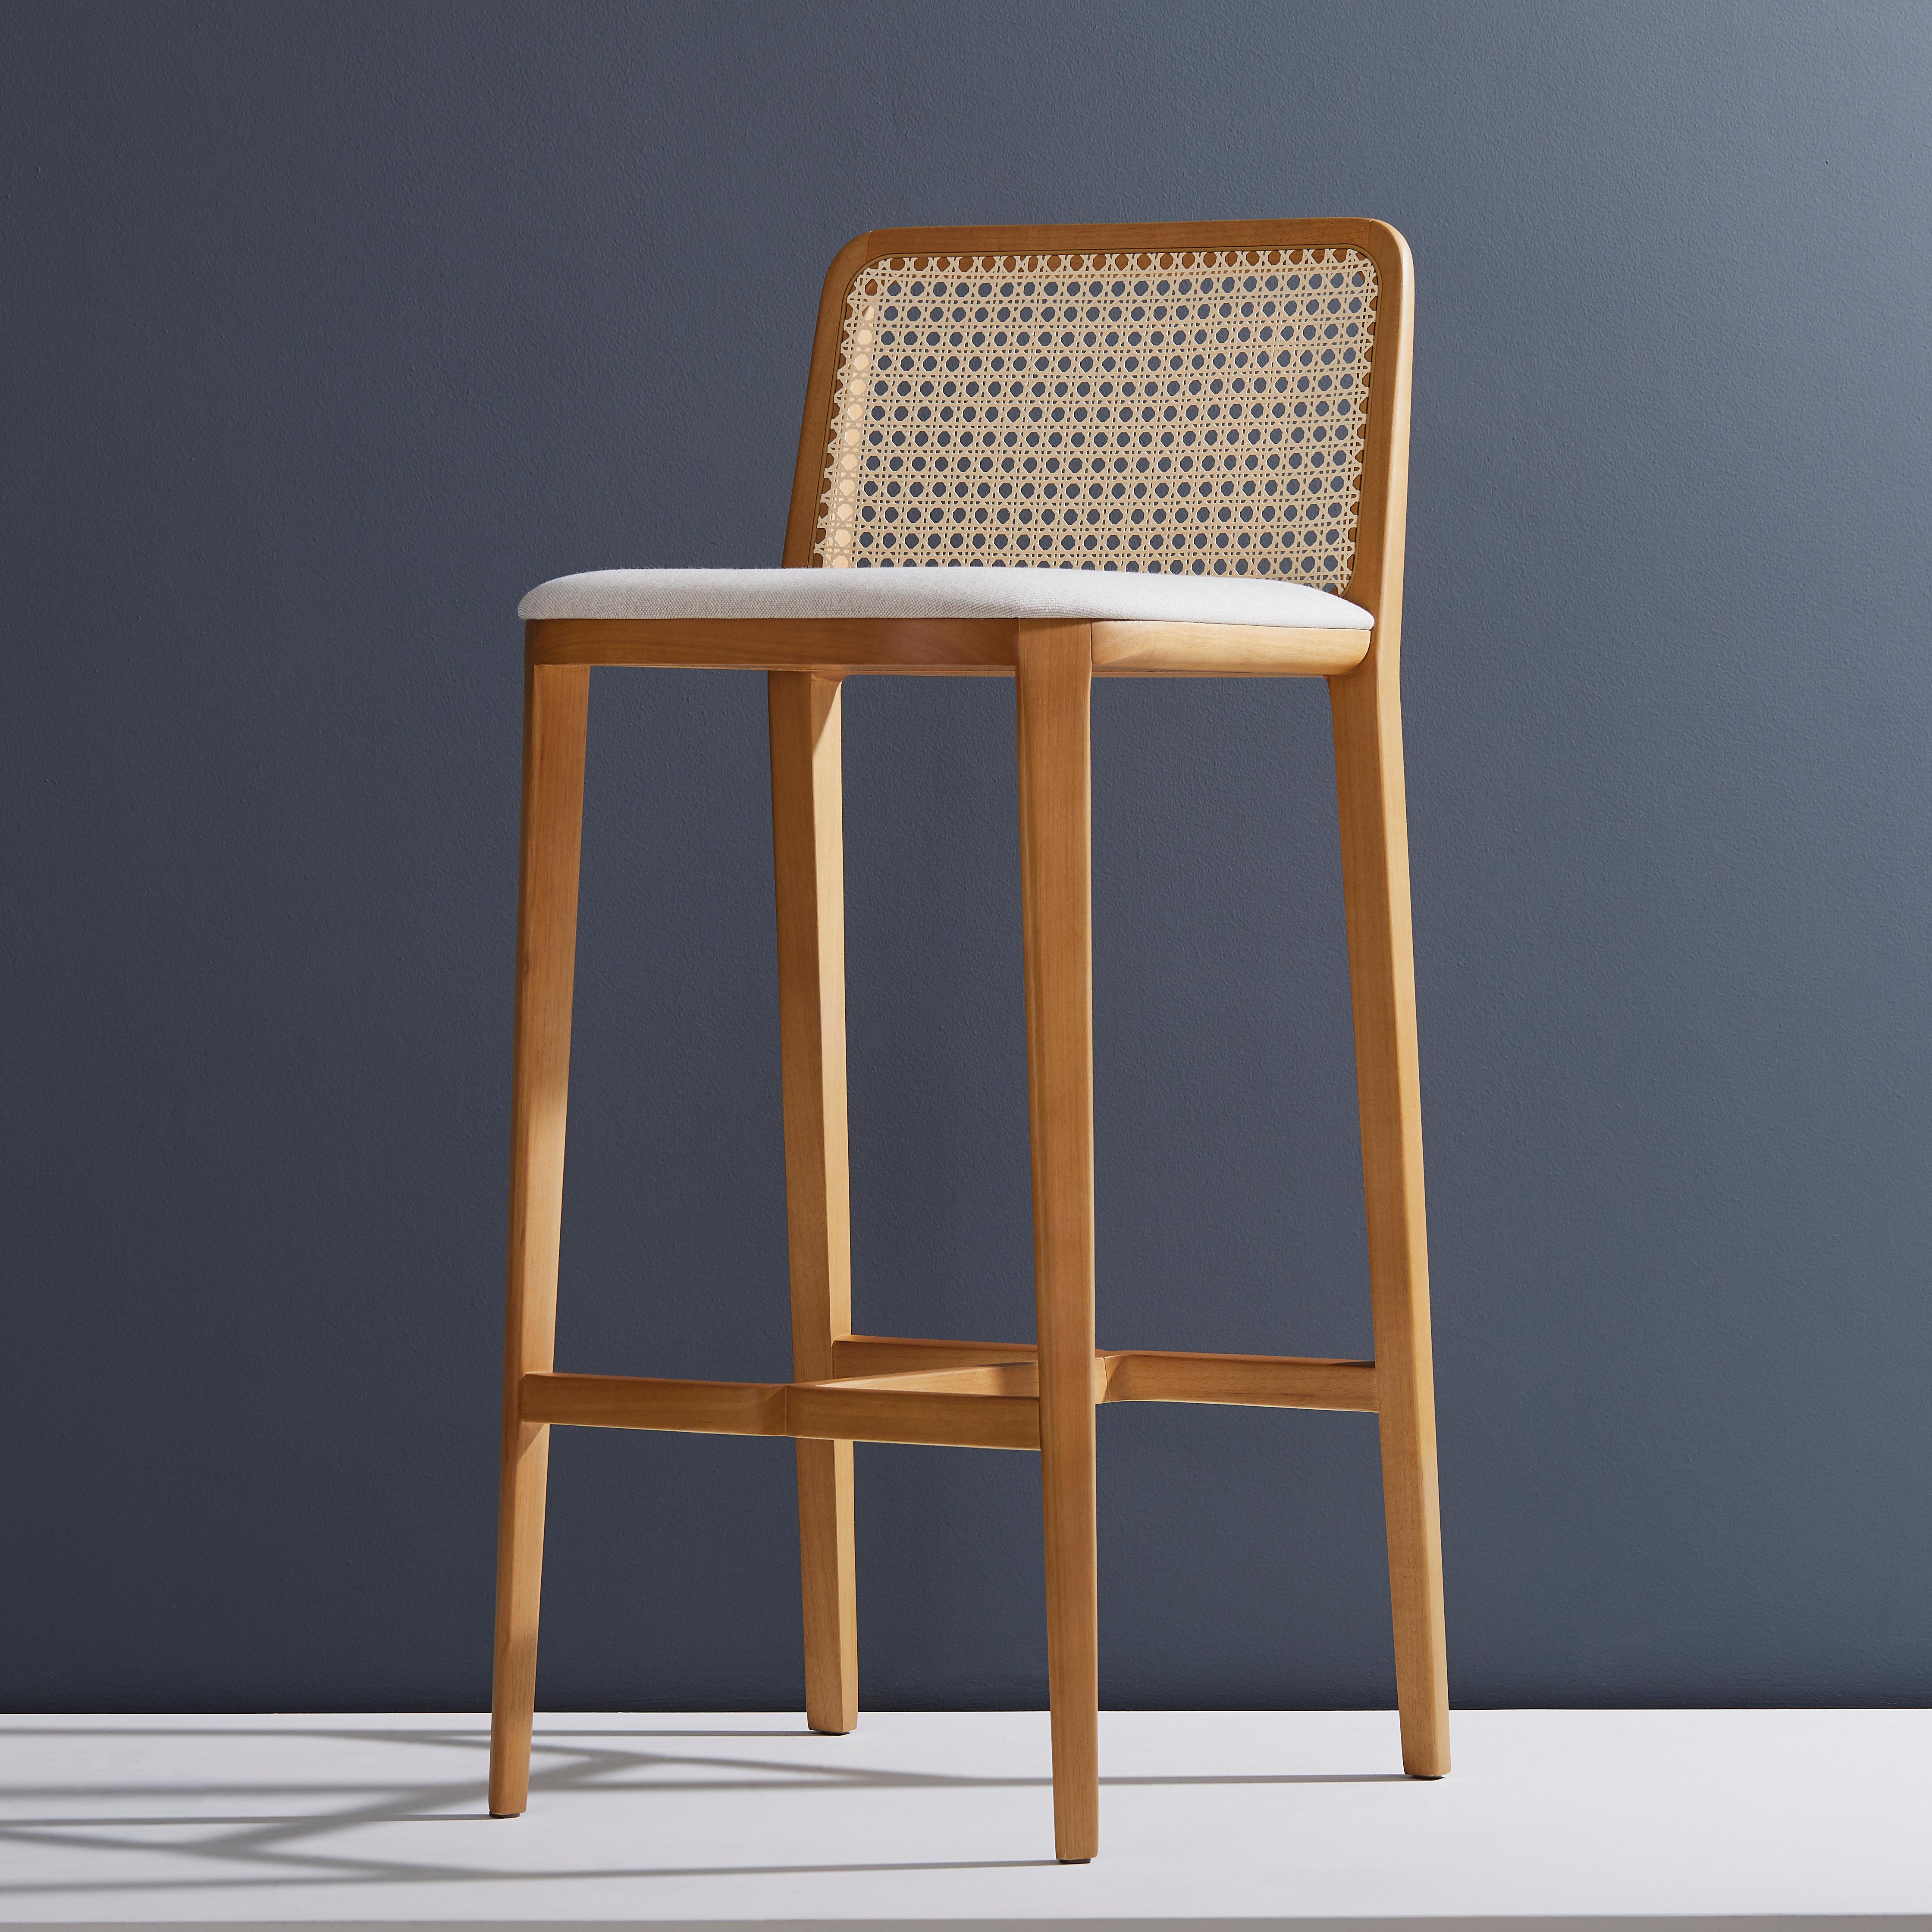 Collection de chaises Wing en bois massif, flexibilité, esthétique moderne, confort et douceur sont les mots-clés de cette collection. Le concept est inspiré du design de l'avion B-52, cette inspiration nous a donné la liberté de créer une